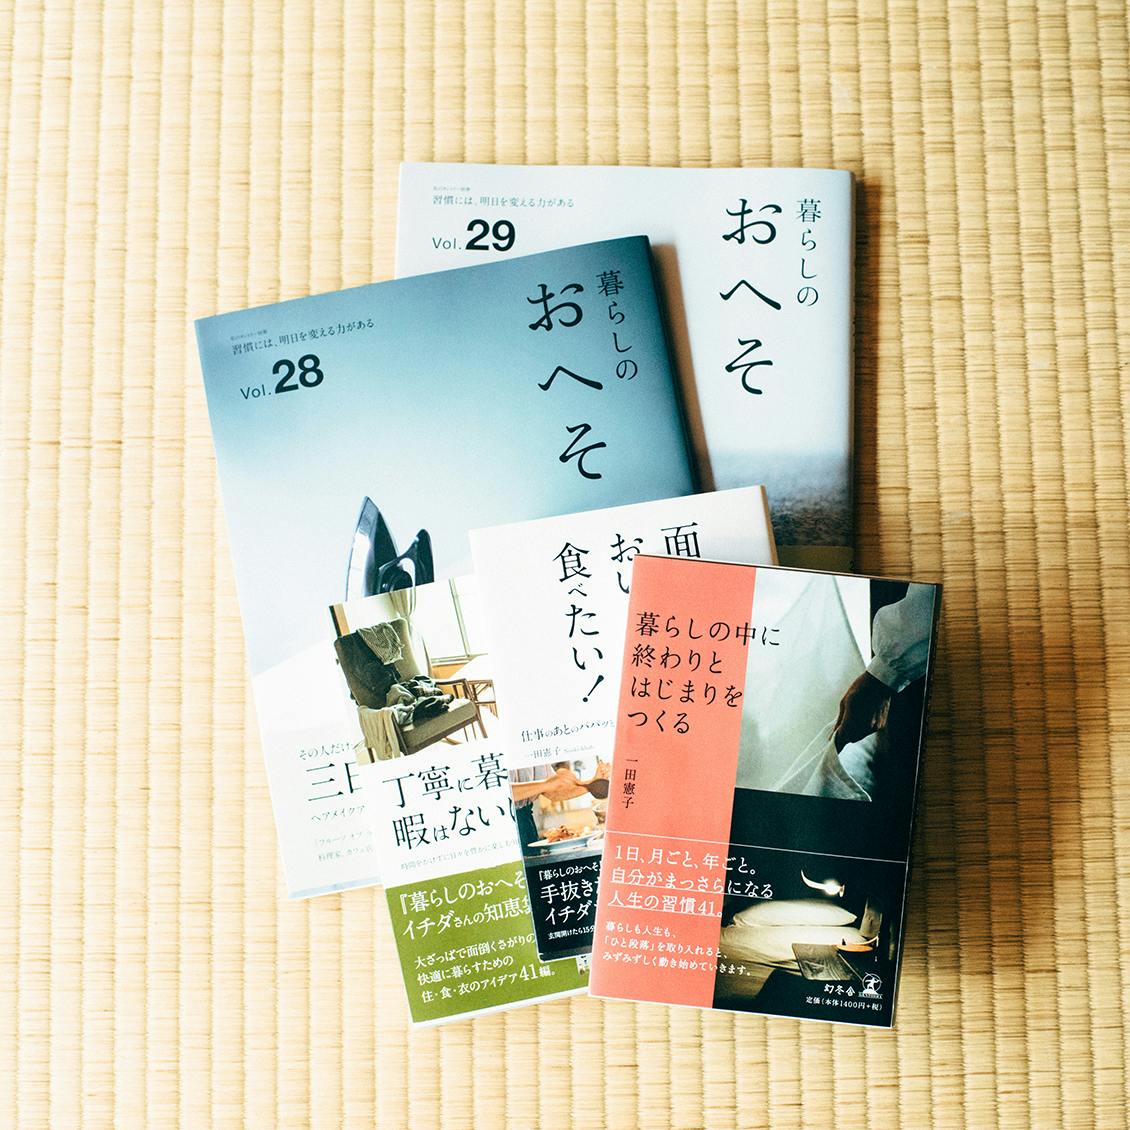 一田 憲子「暮らしの中に終わりと始まりをつくる」他5冊 - 本